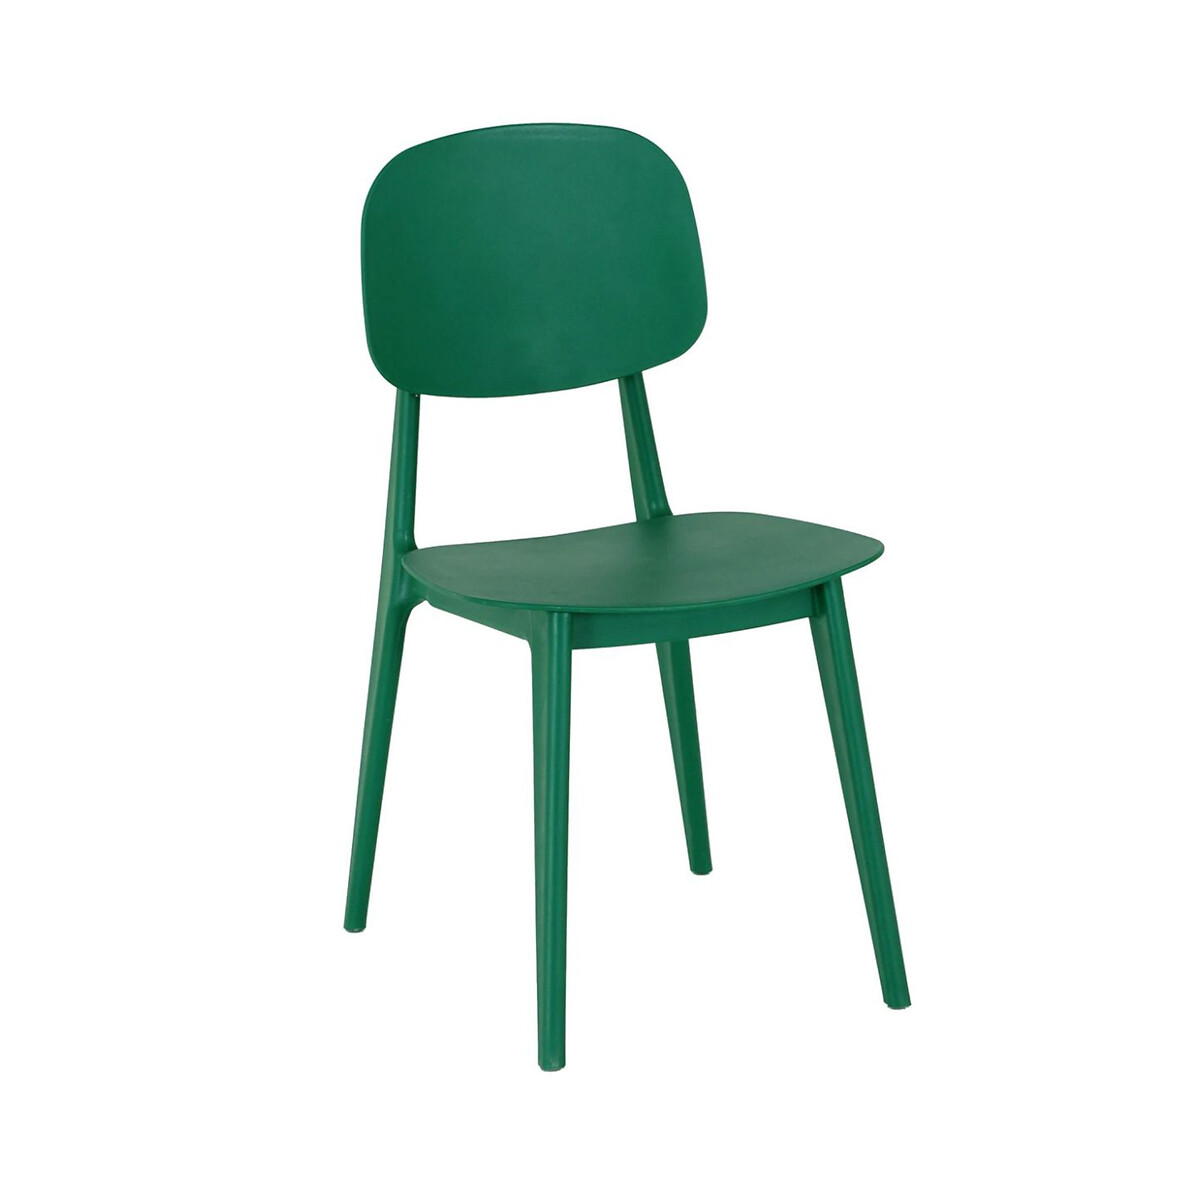 Стул Fresco единый размер зеленый стул пиза единый размер зеленый